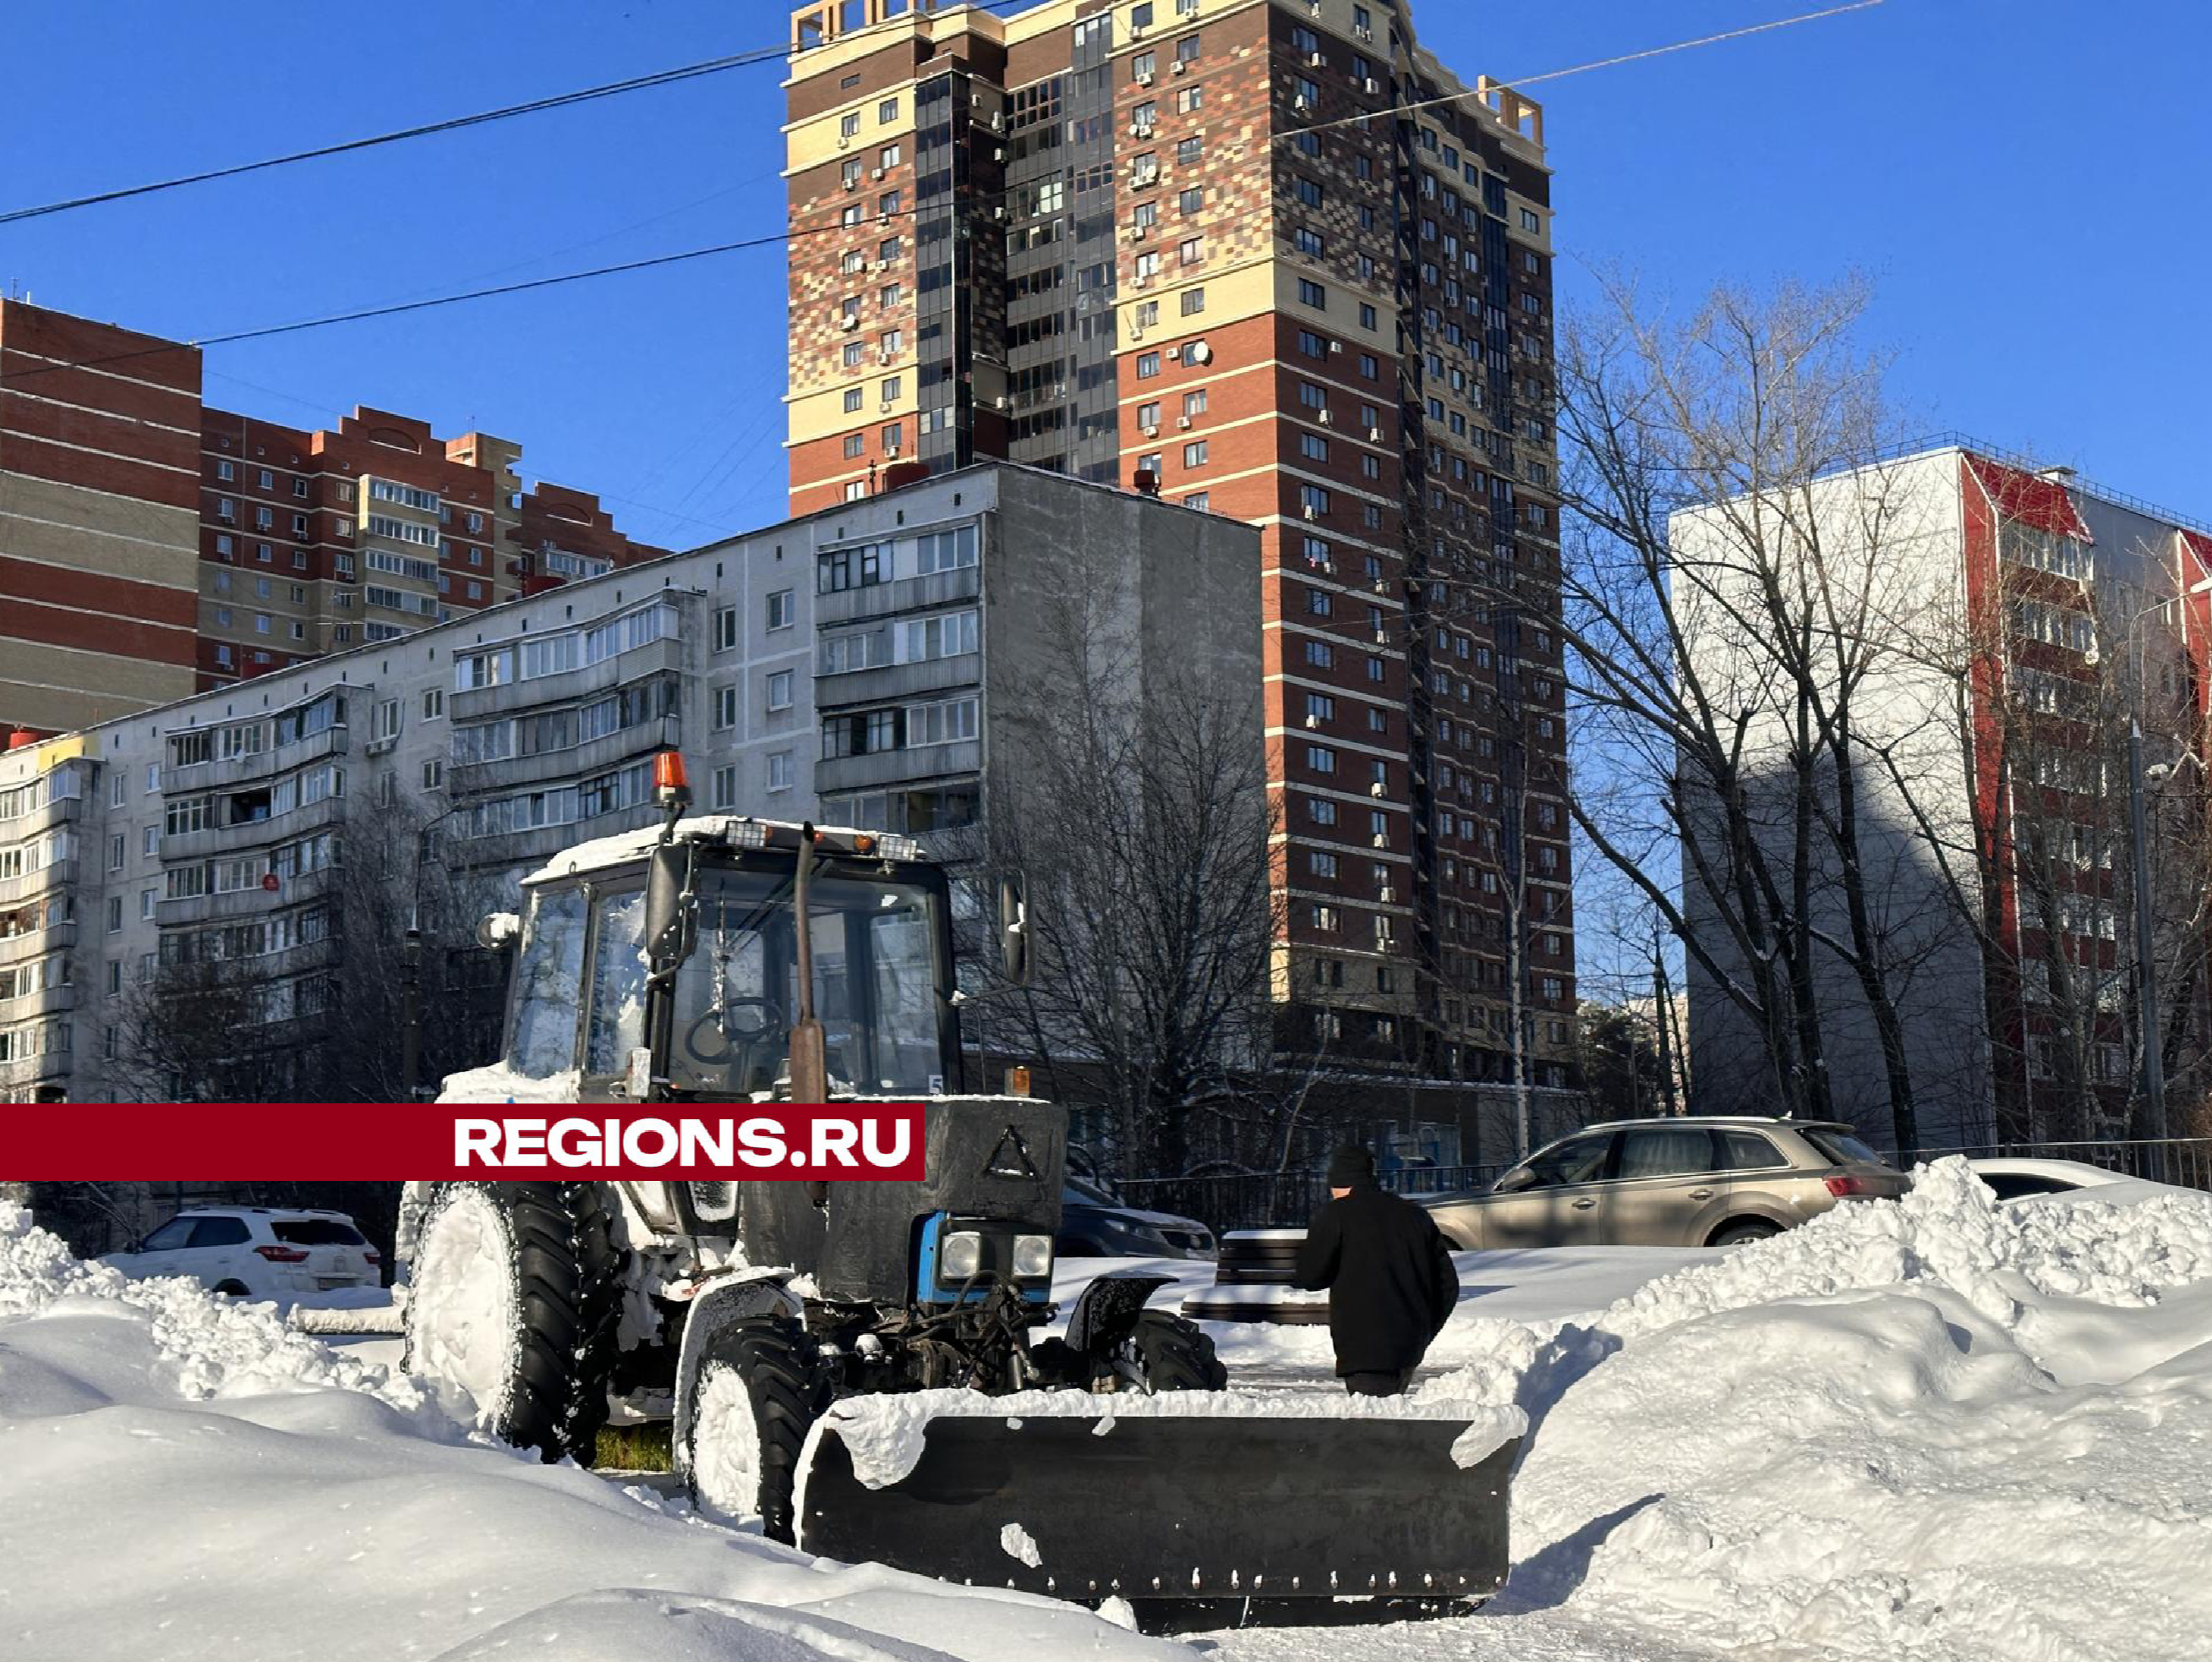 Сквер «Союзный» очищают от снега по особому регламенту